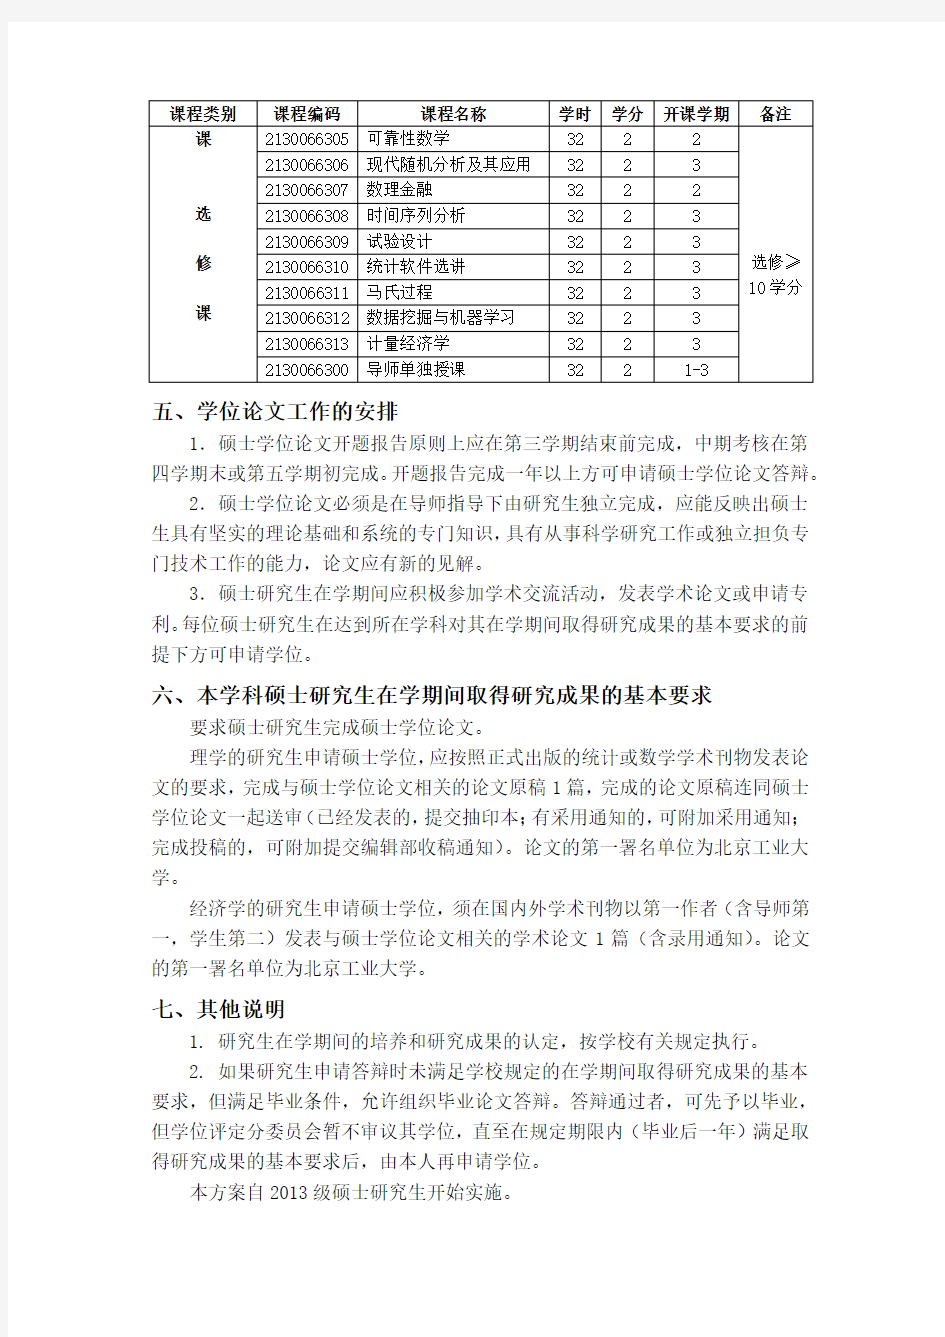 统计学 0714 - 北京工业大学研究生院